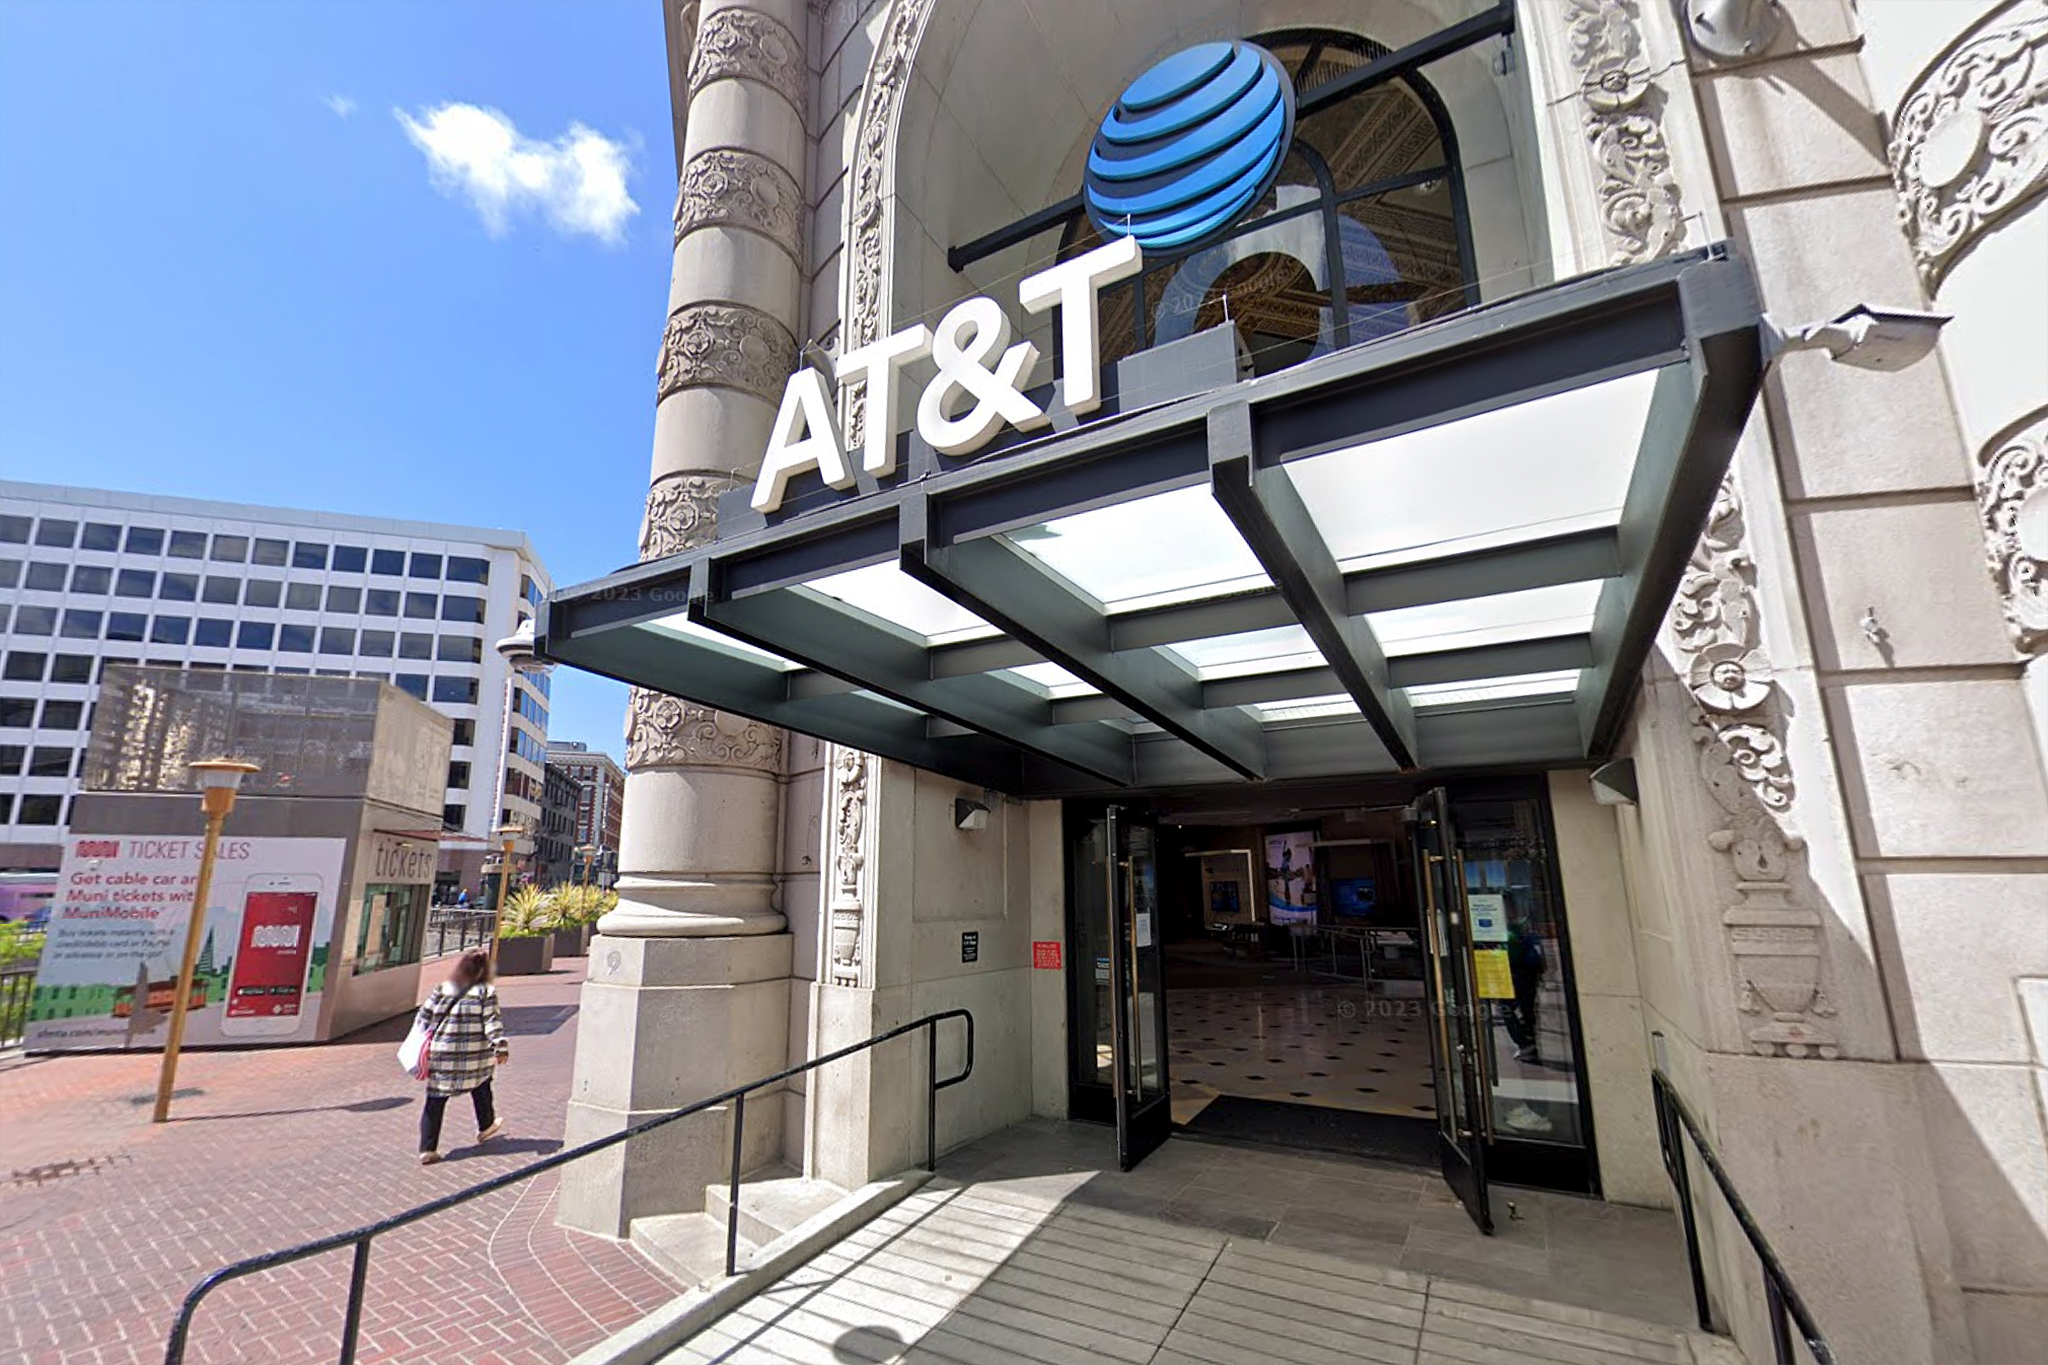 AT&T cerrará su tienda insignia en el centro de San Francisco